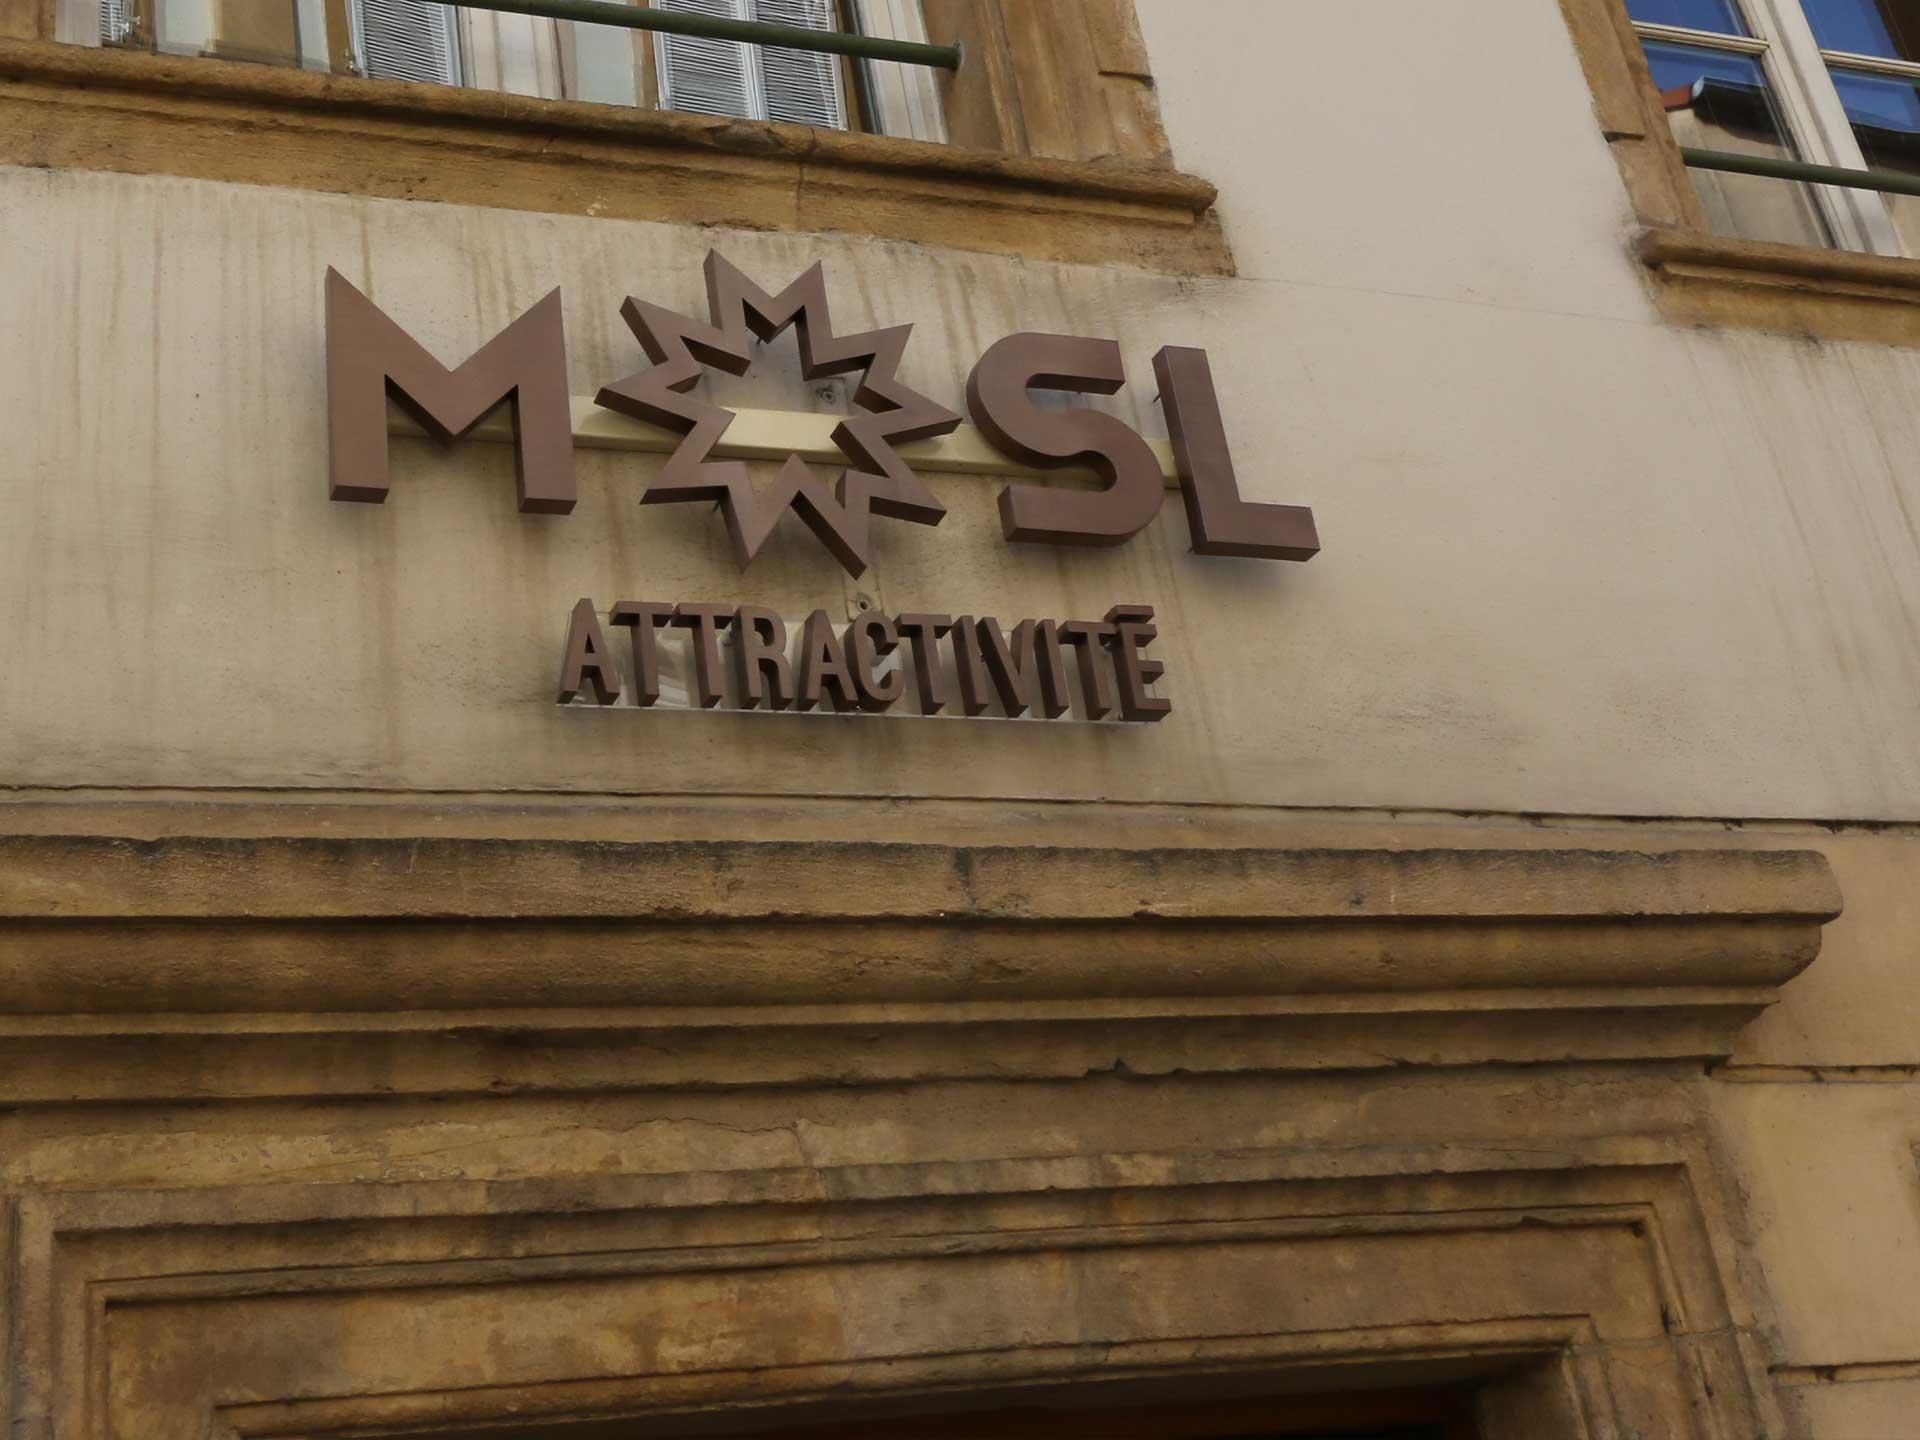 facade Moselle Attractivité